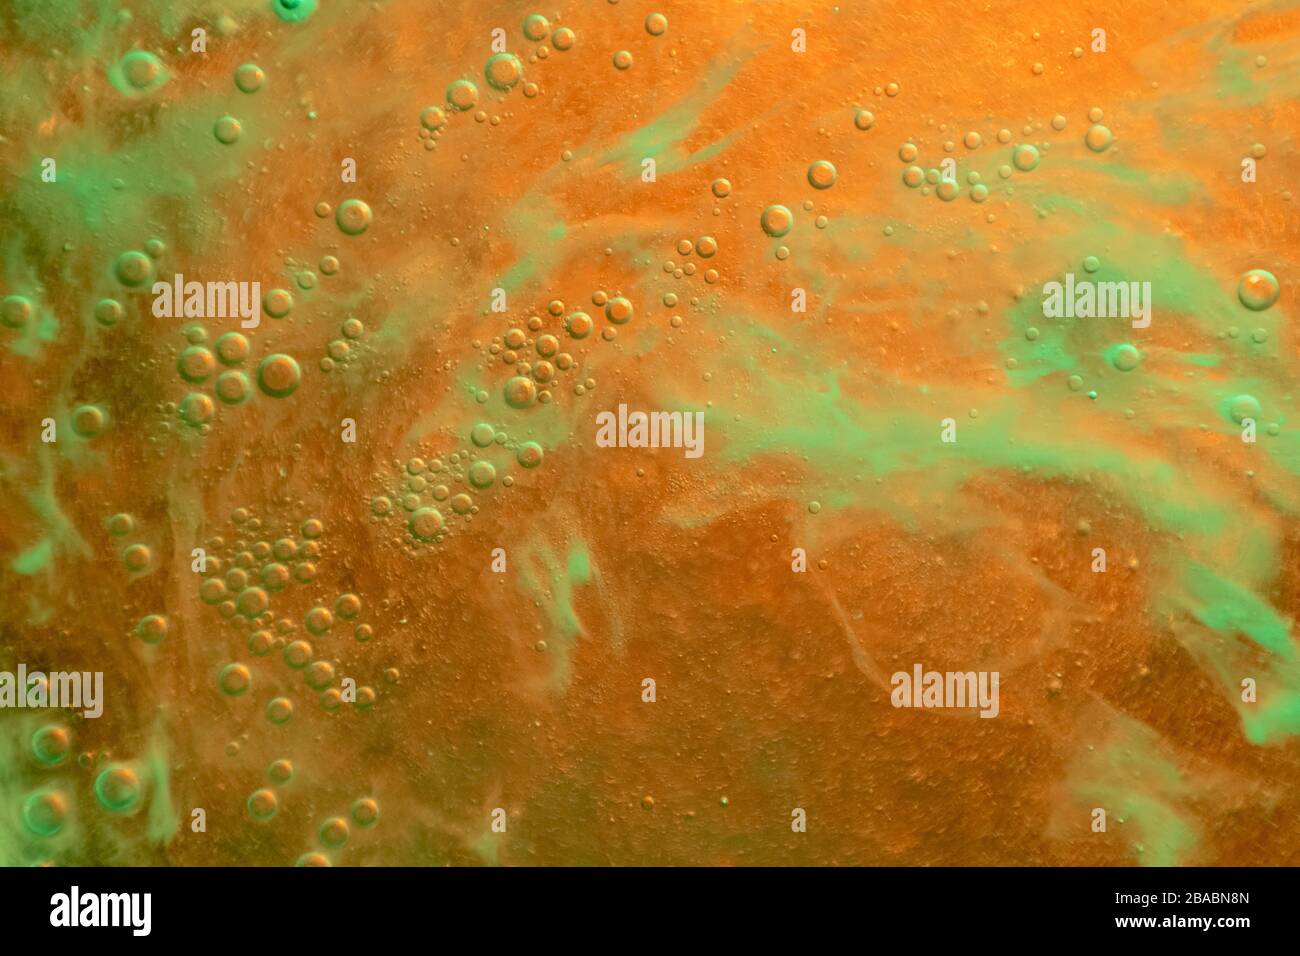 sfondo astratto con gocce d'acqua di colore arancione e verde Foto Stock